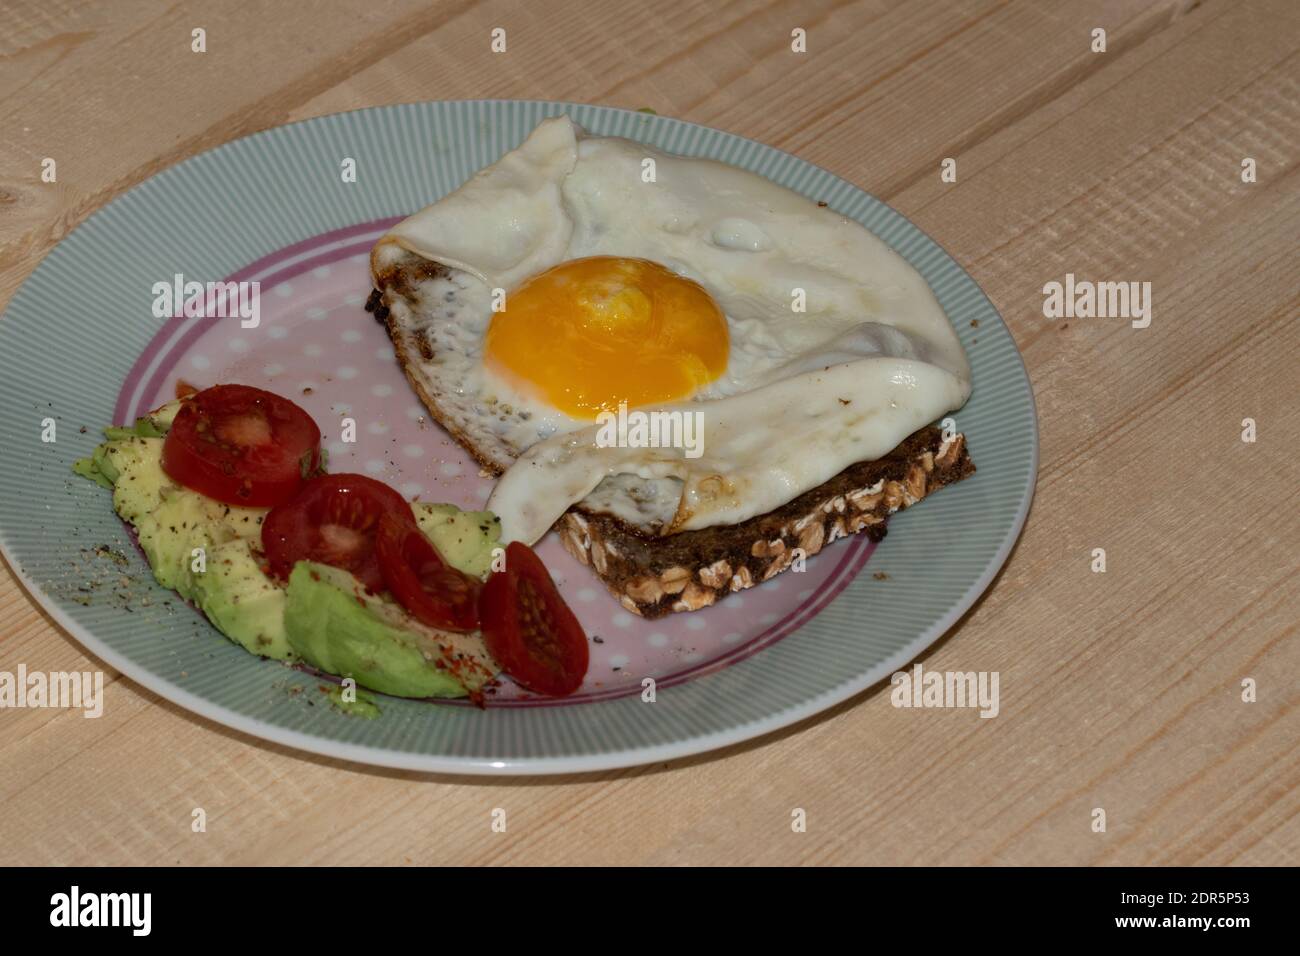 Uovo fritto su pane integrale con avocado a fette e pomodoro disposto su un piatto. Foto Stock